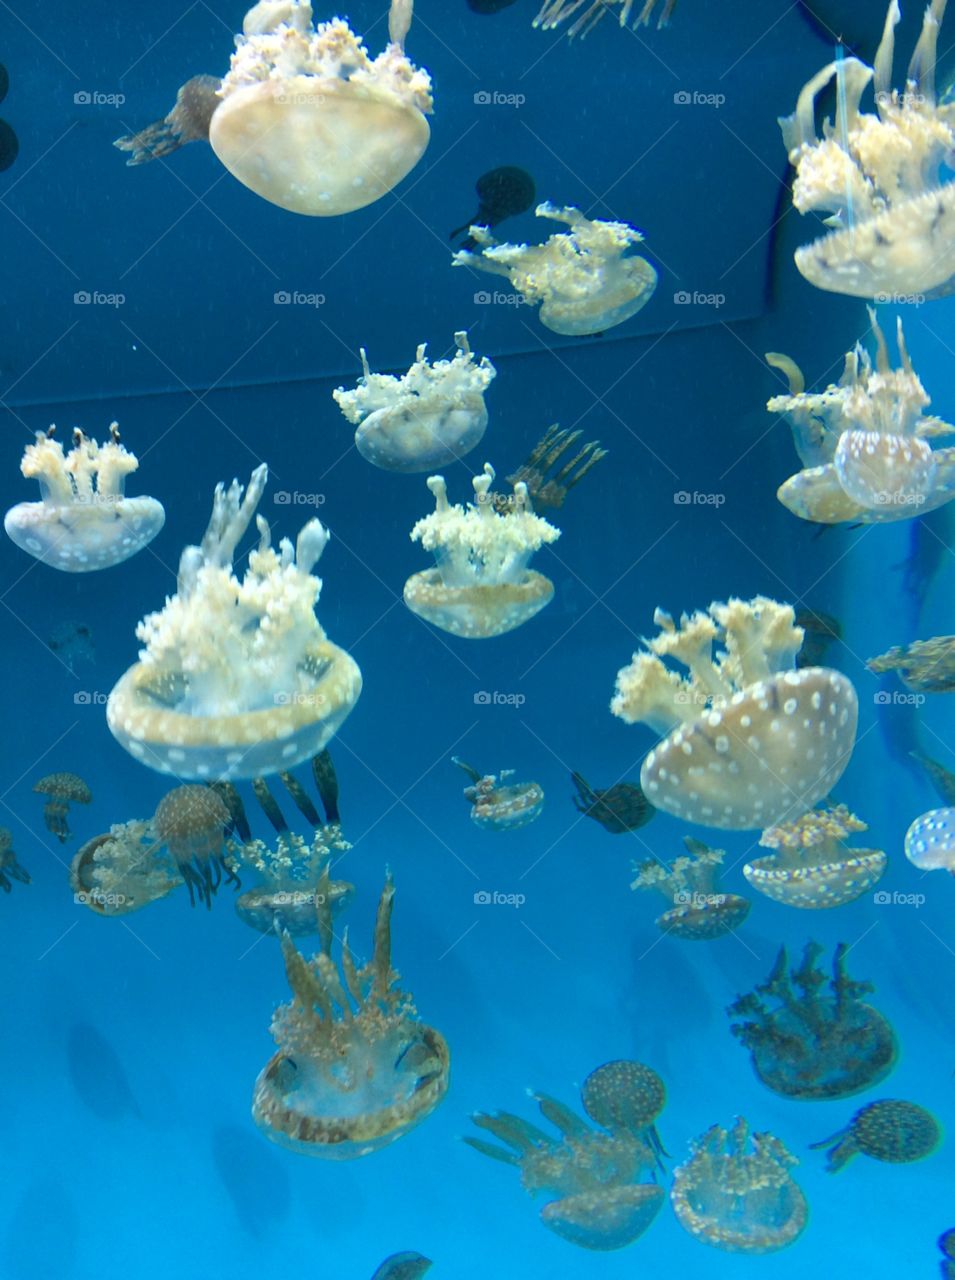 Jellyfish 4. At aquarium of the pacific